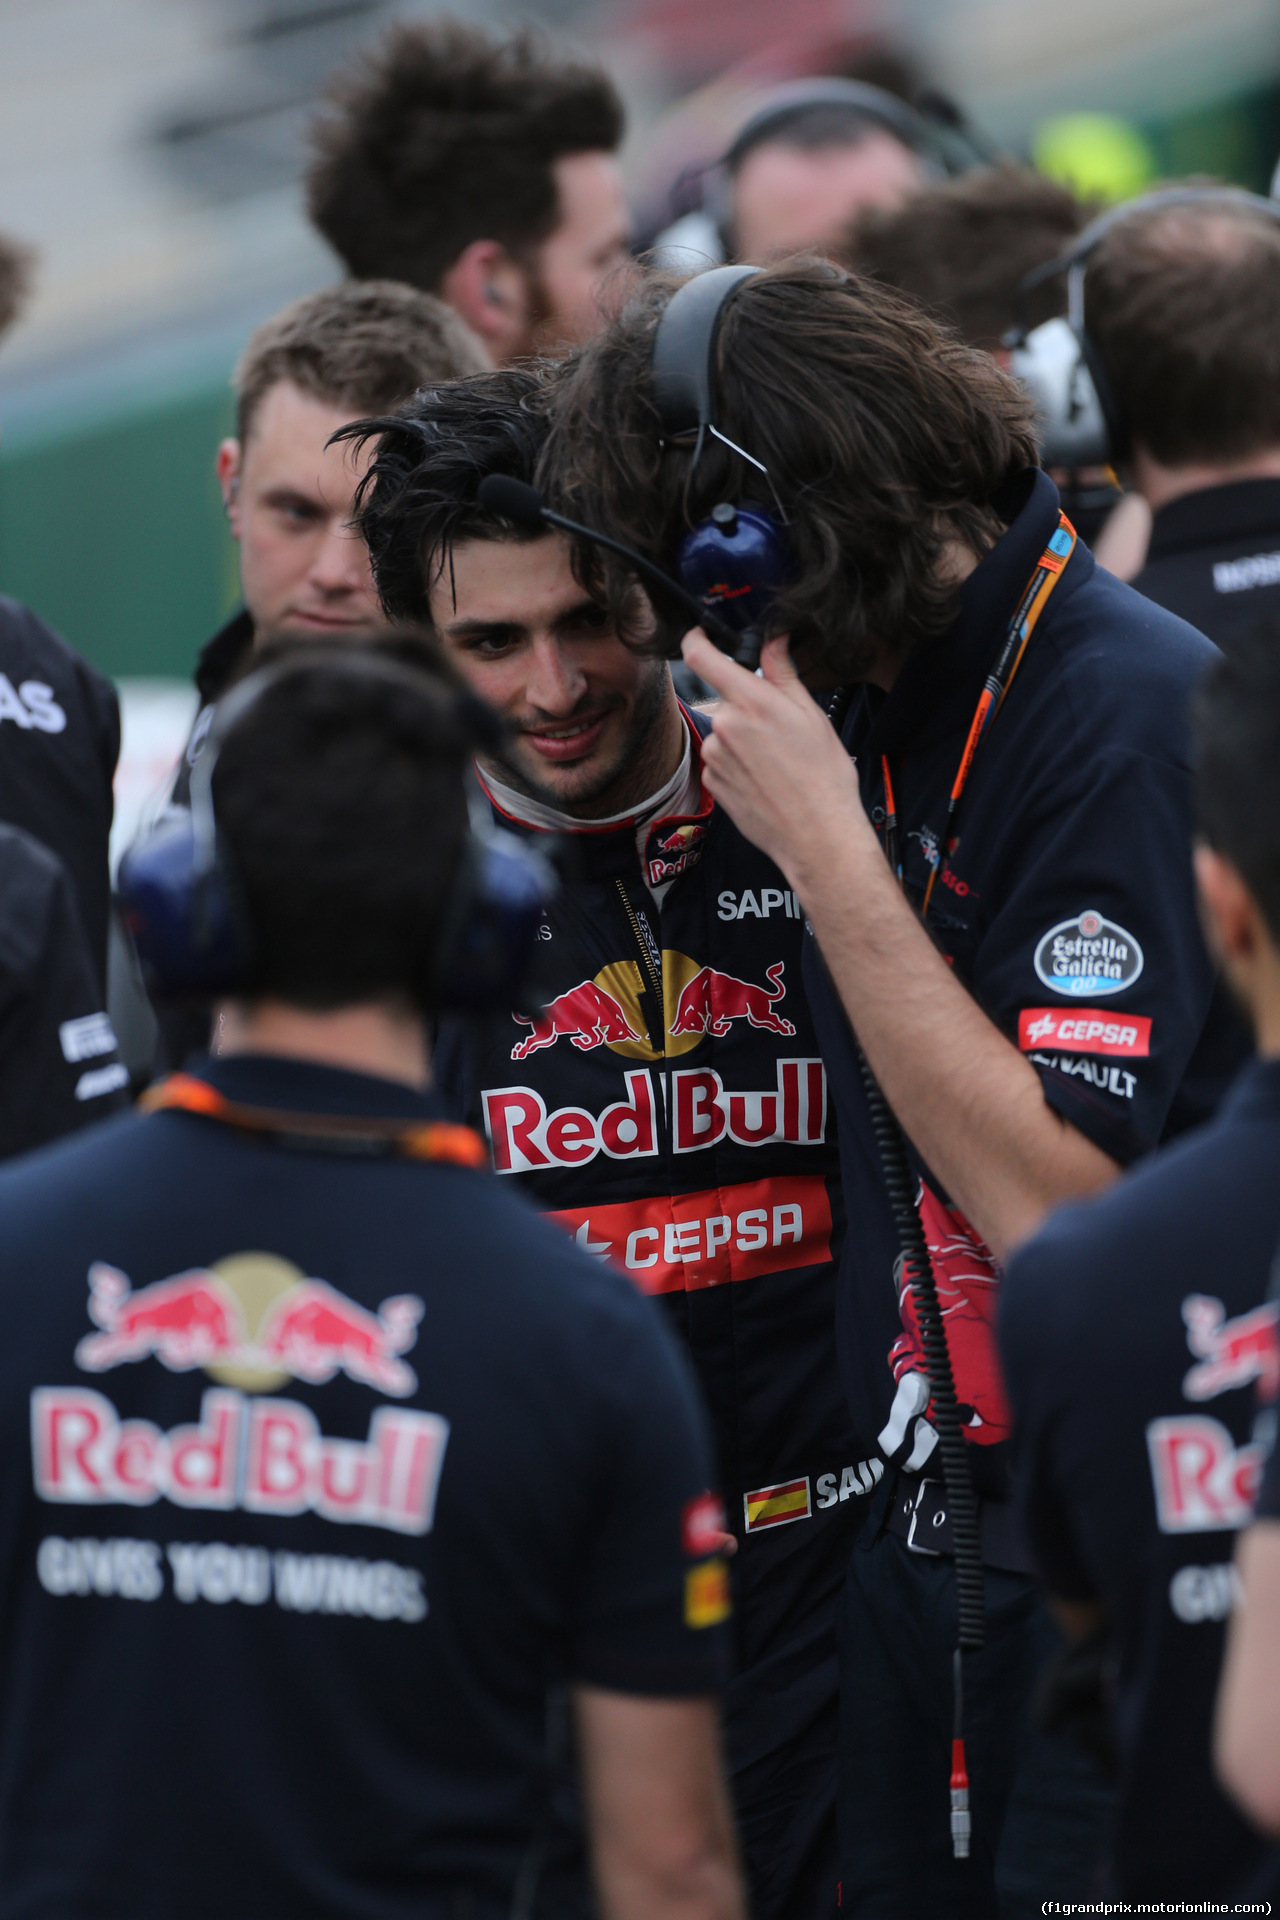 GP AUSTRALIA, 14.03.2014 - Qualifiche, Carlos Sainz Jr (ESP) Scuderia Toro Rosso STR10